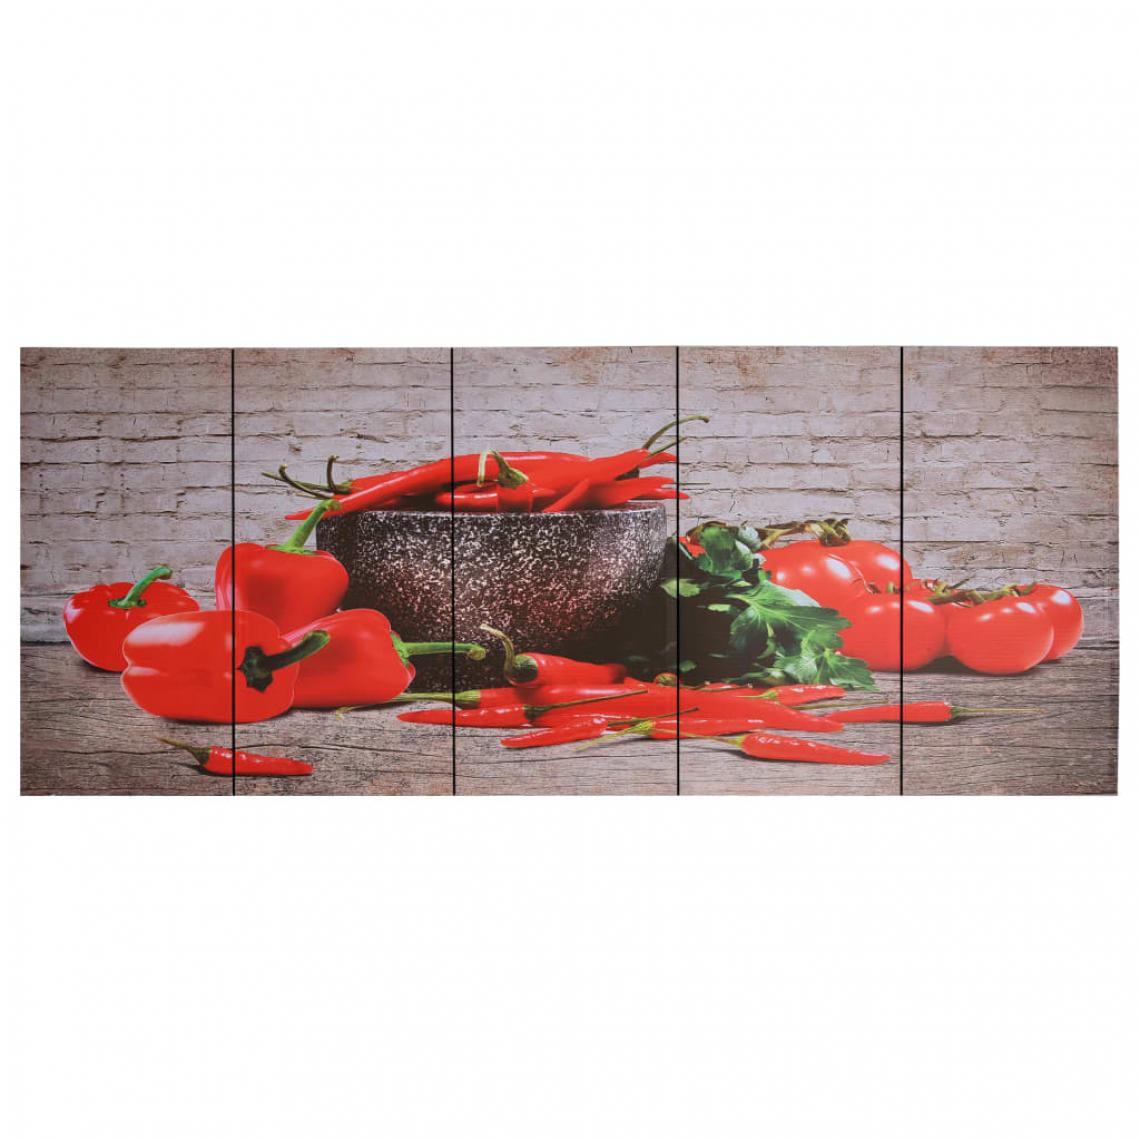 Icaverne - Icaverne - Affiches, reproductions et œuvres graphiques categorie Jeu de tableau sur toile Paprikas Multicolore 150x60 cm - Affiches, posters